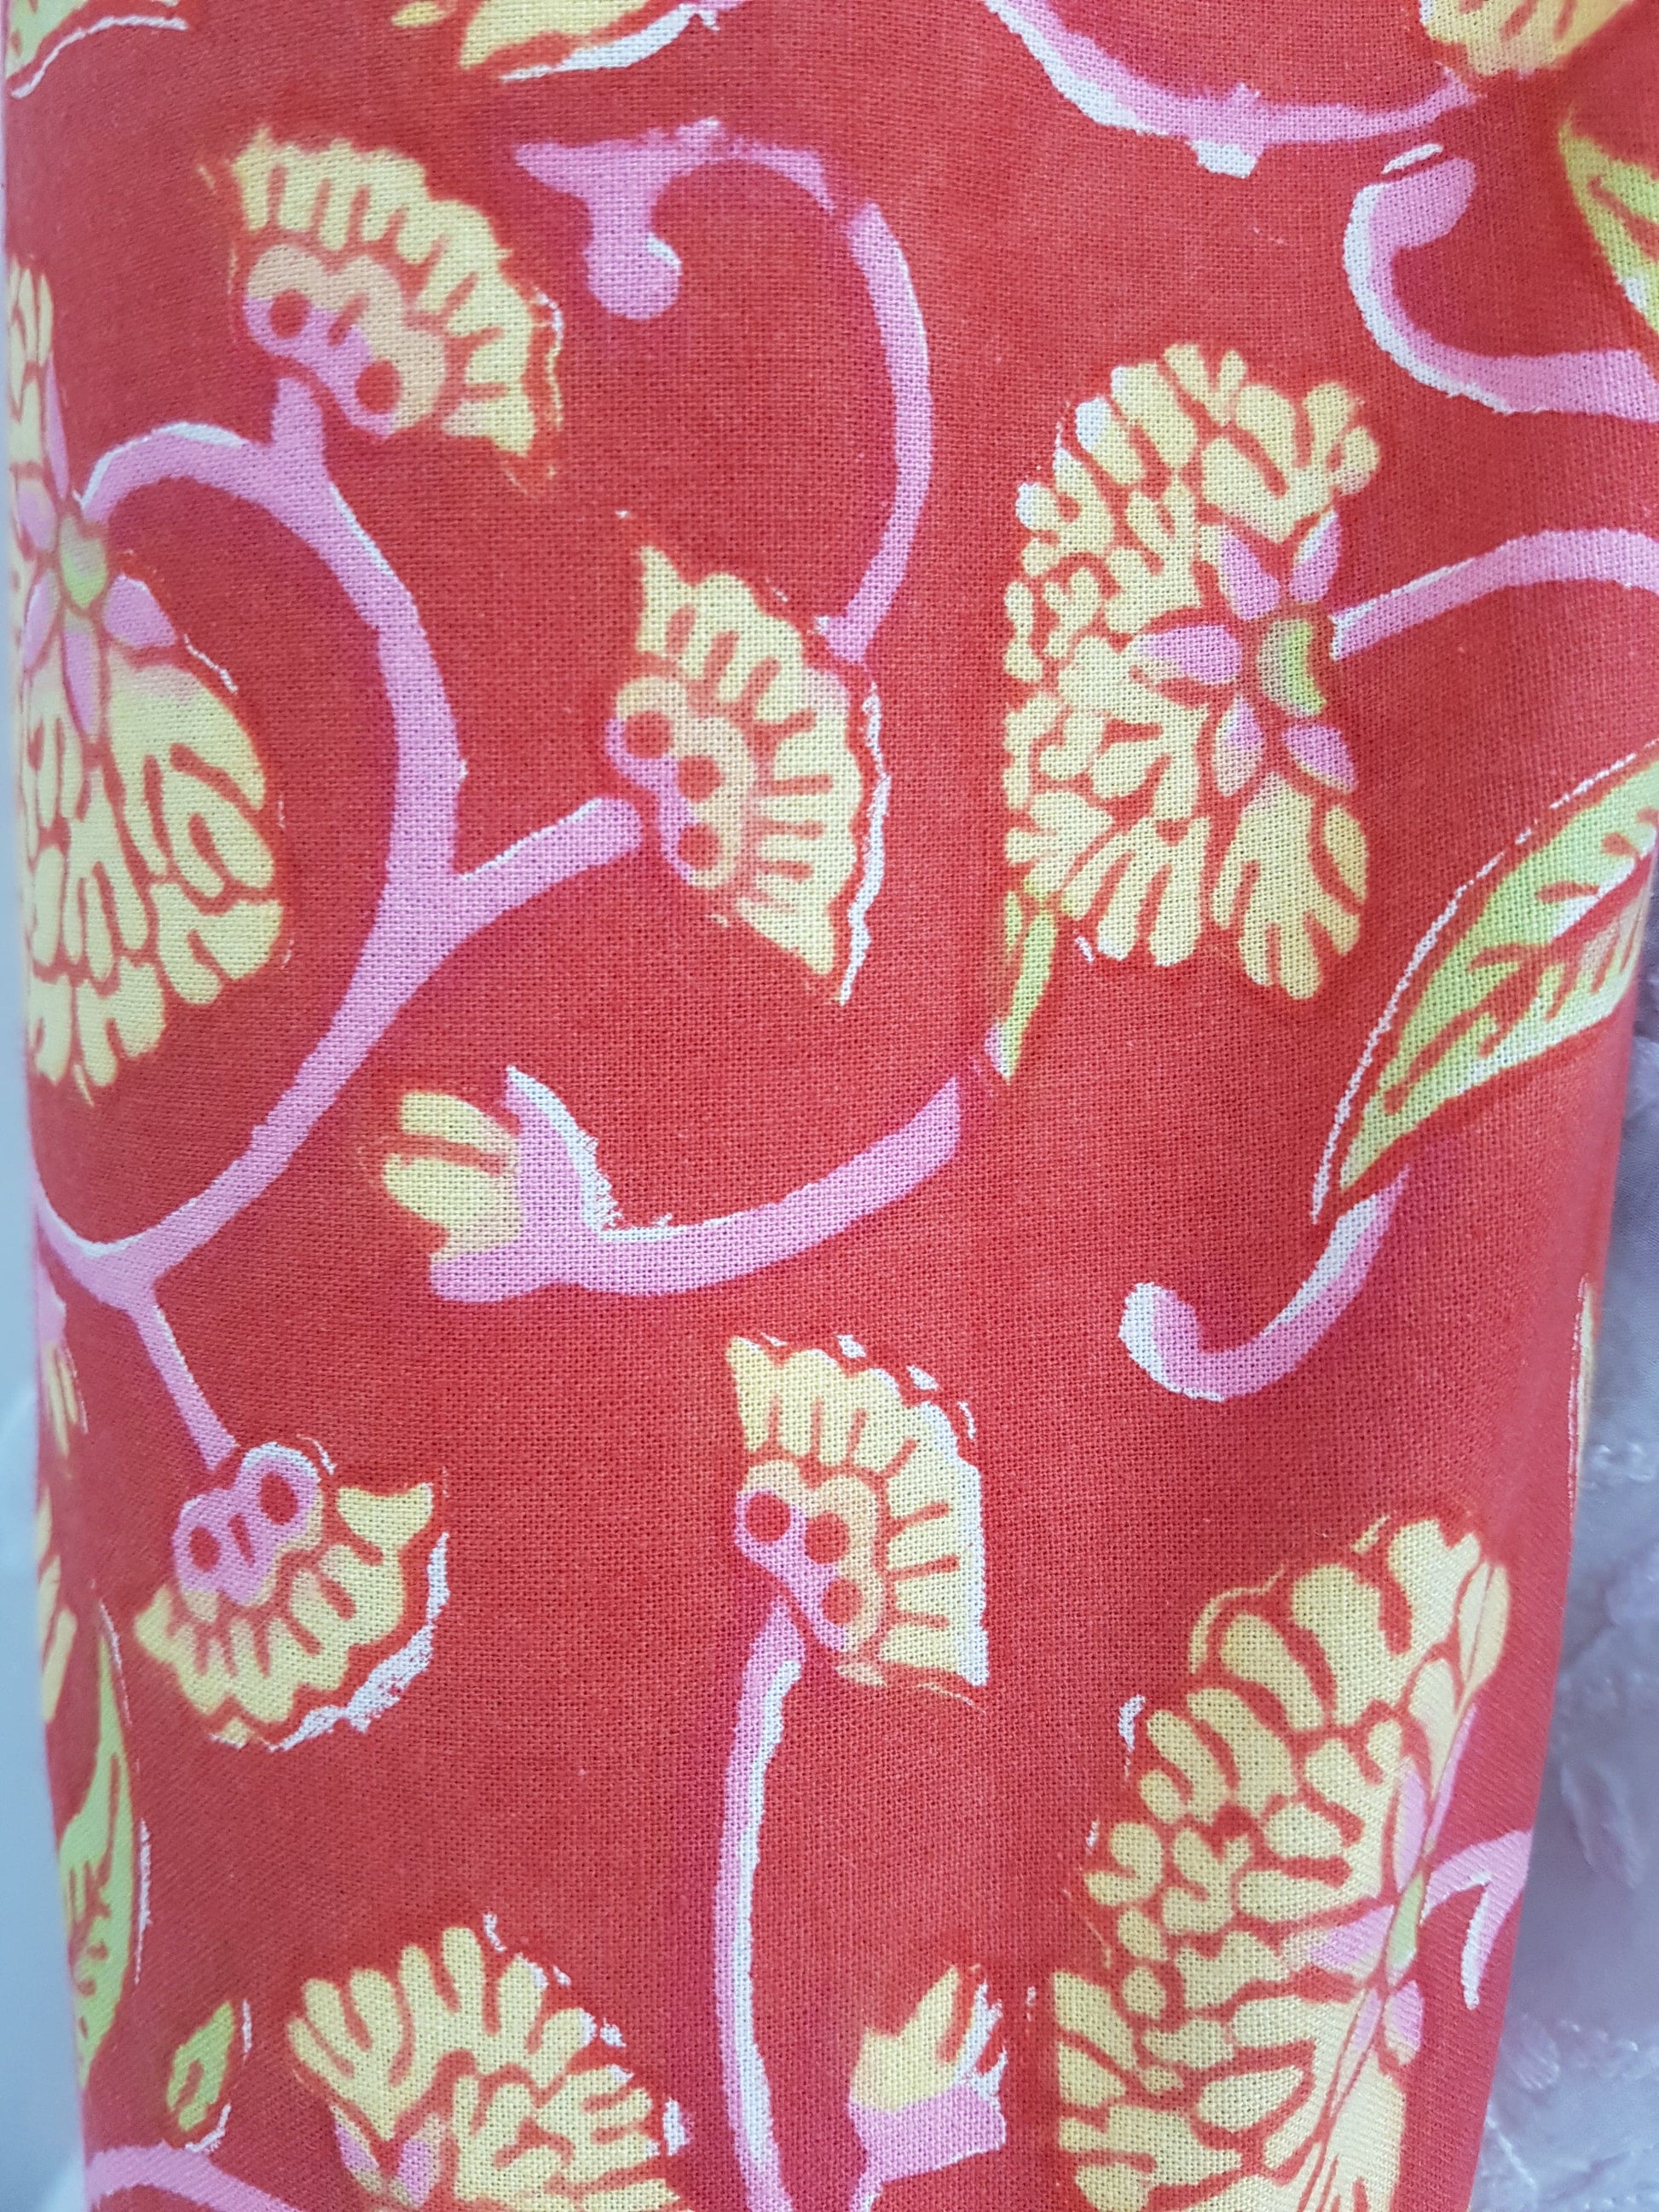 Detalle de estampado a mano rojo con flores amarillas y tallos rosas.